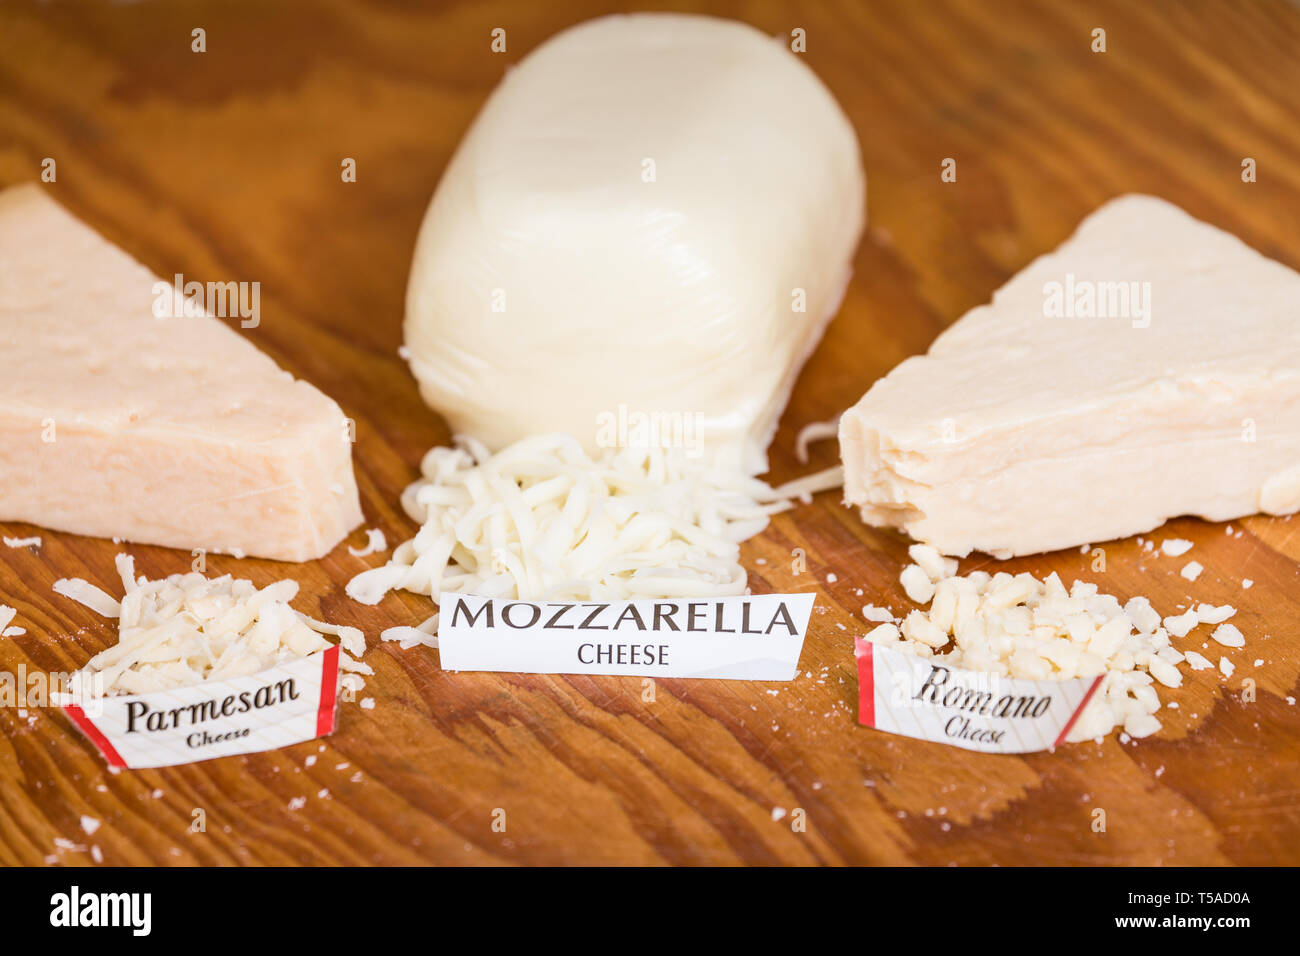 À l'aide d'une variété (mozzarella, parmesan et romano) de fromage râpé sur une pizza ajoute beaucoup à la saveur Banque D'Images